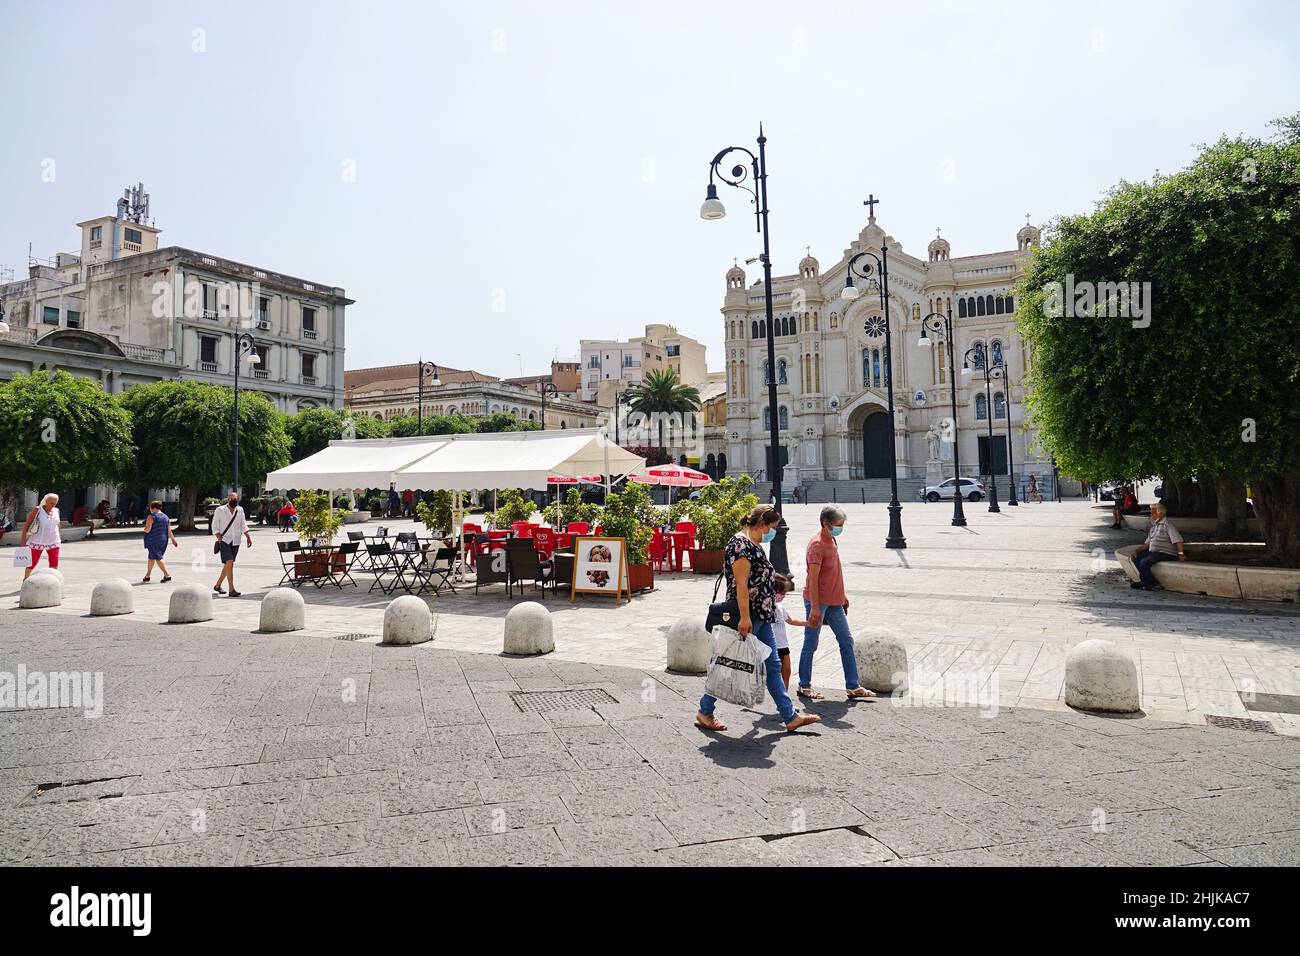 Persone che camminano nella piazza di fronte alla cattedrale. Reggio Calabria, Italia - Luglio 2022 Foto Stock